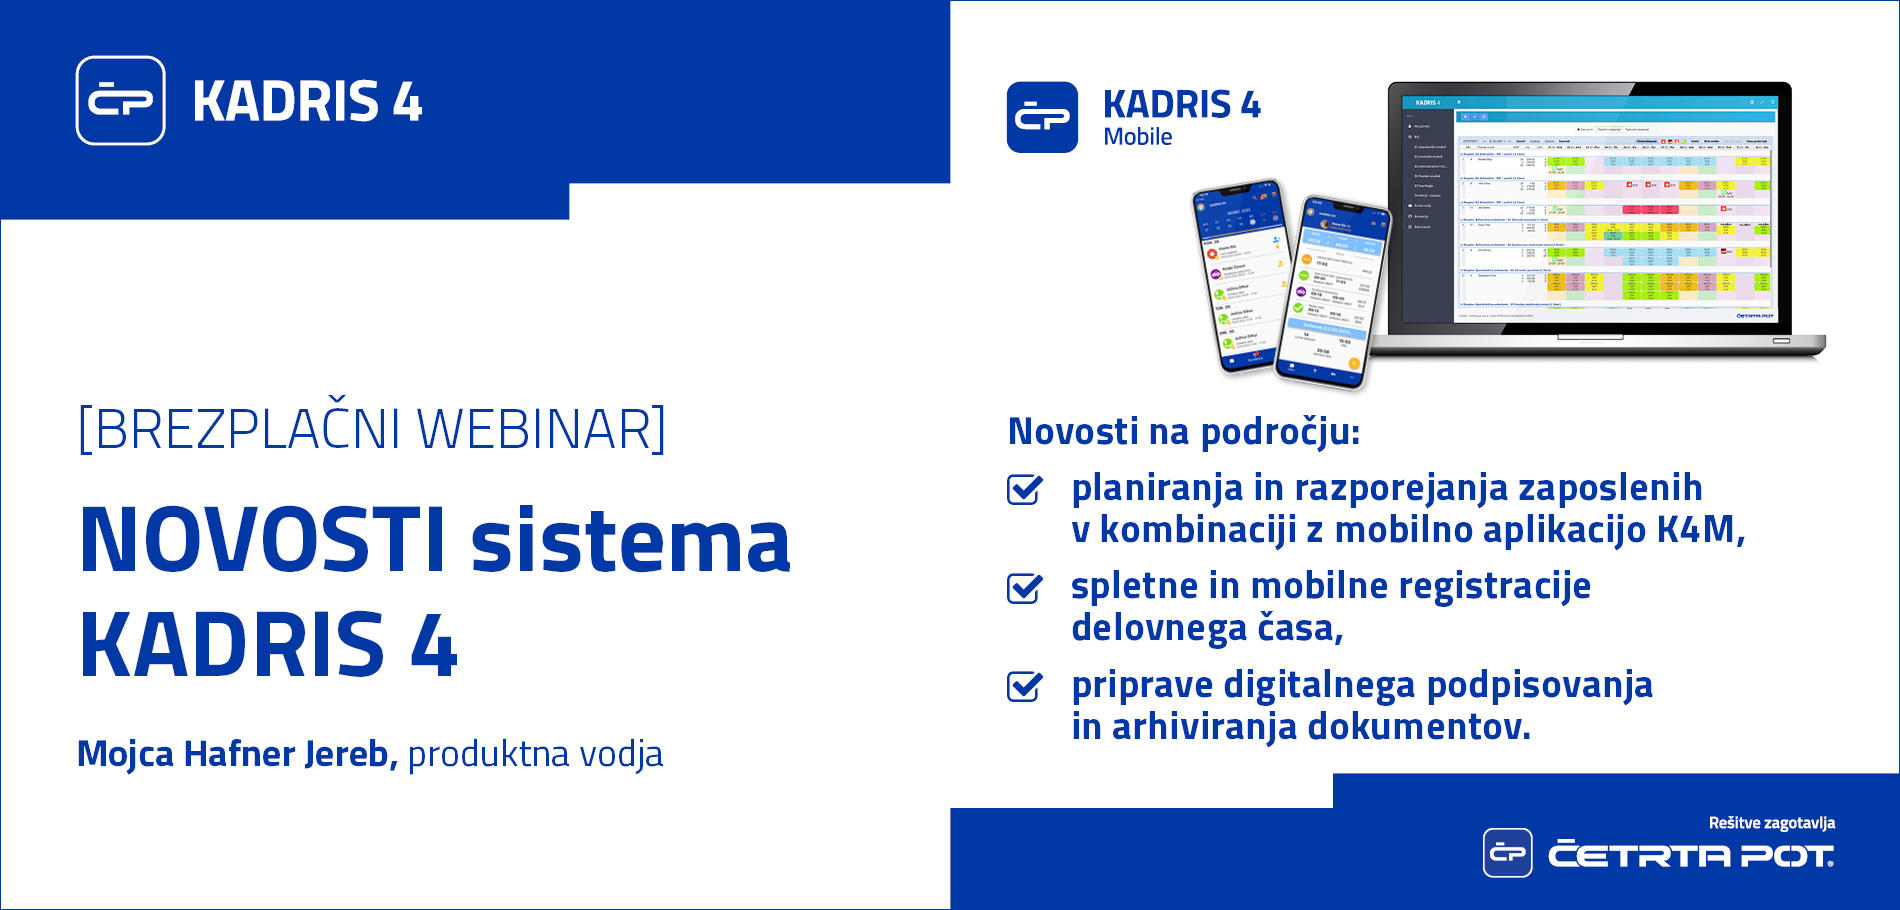 Webinarji - Razvojne novosti sistema KADRIS 4 in mobilne aplikacije KADRIS 4 Mobile